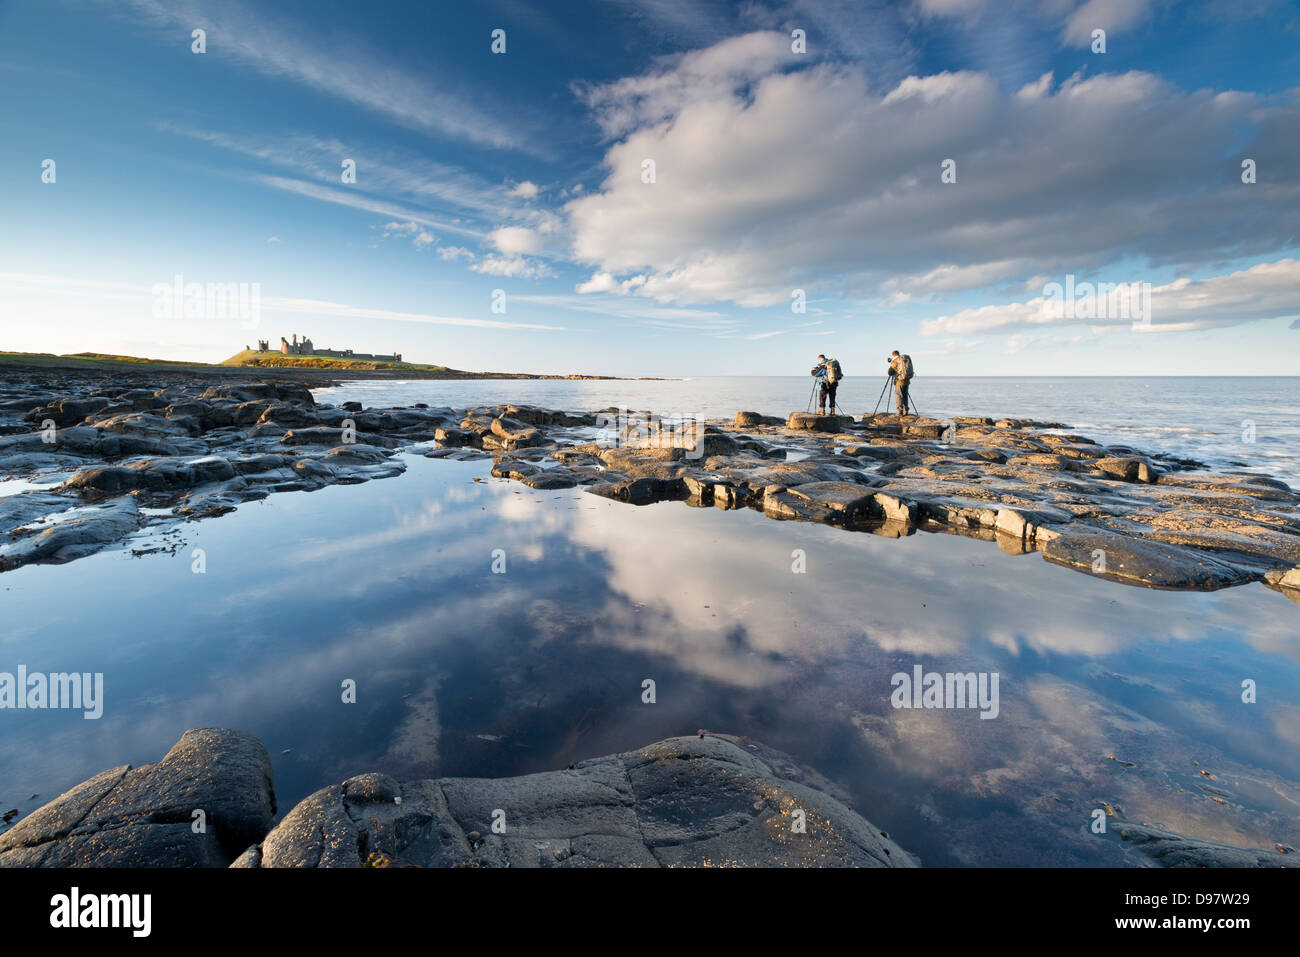 Photographes sur la côte près de Château de Dunstanburgh, Northumberland, Angleterre. Printemps (avril 2013) Banque D'Images